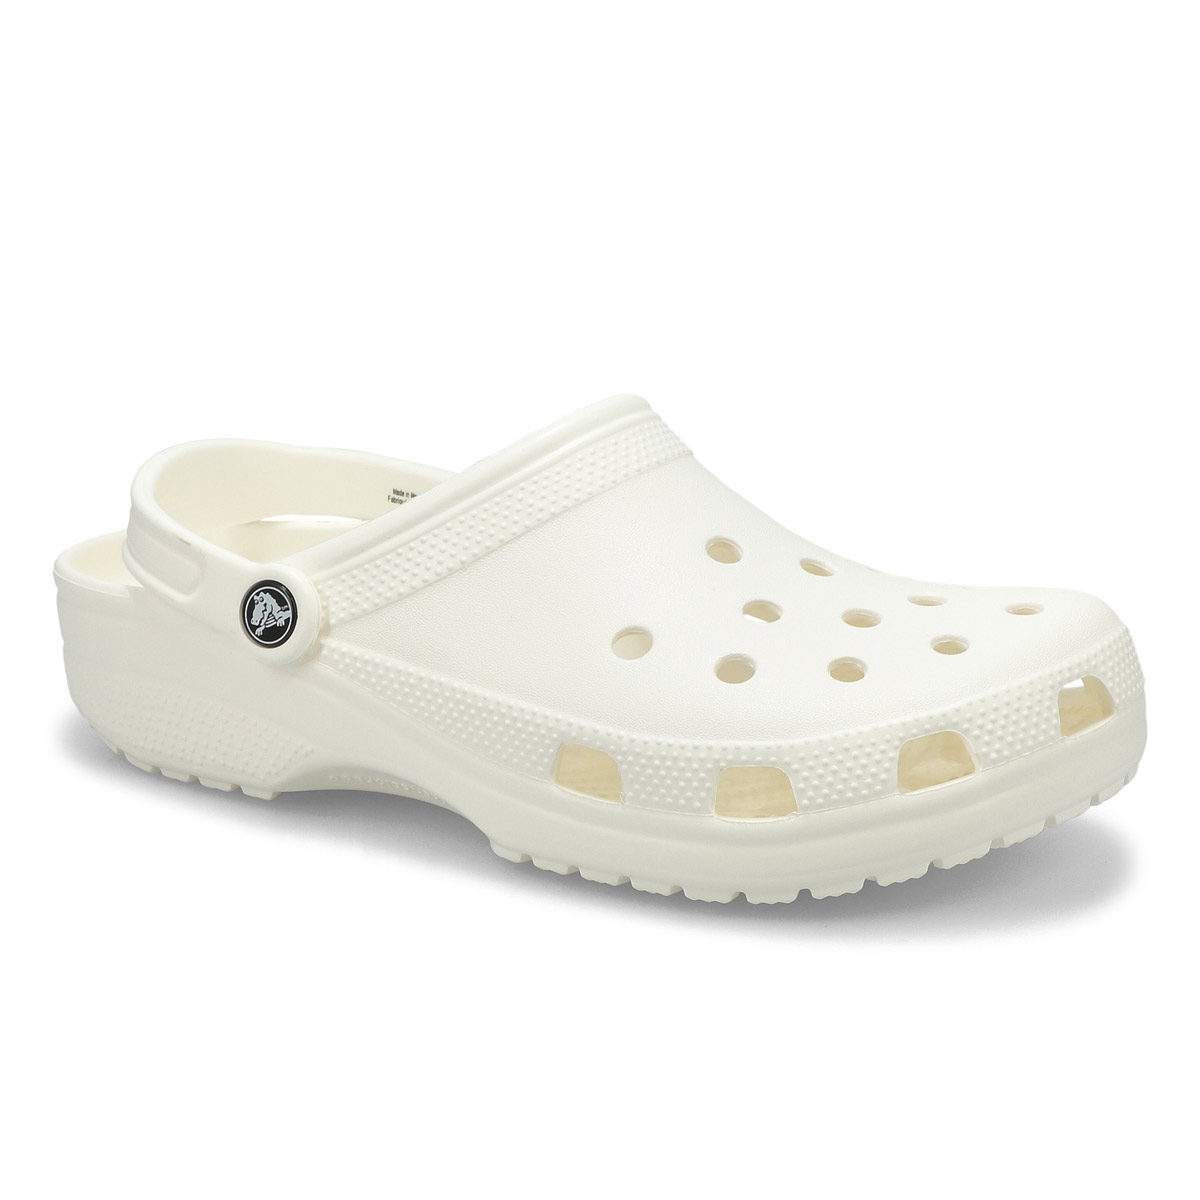 Crocs Men's Classic EVA Clog - White | SoftMoc.com